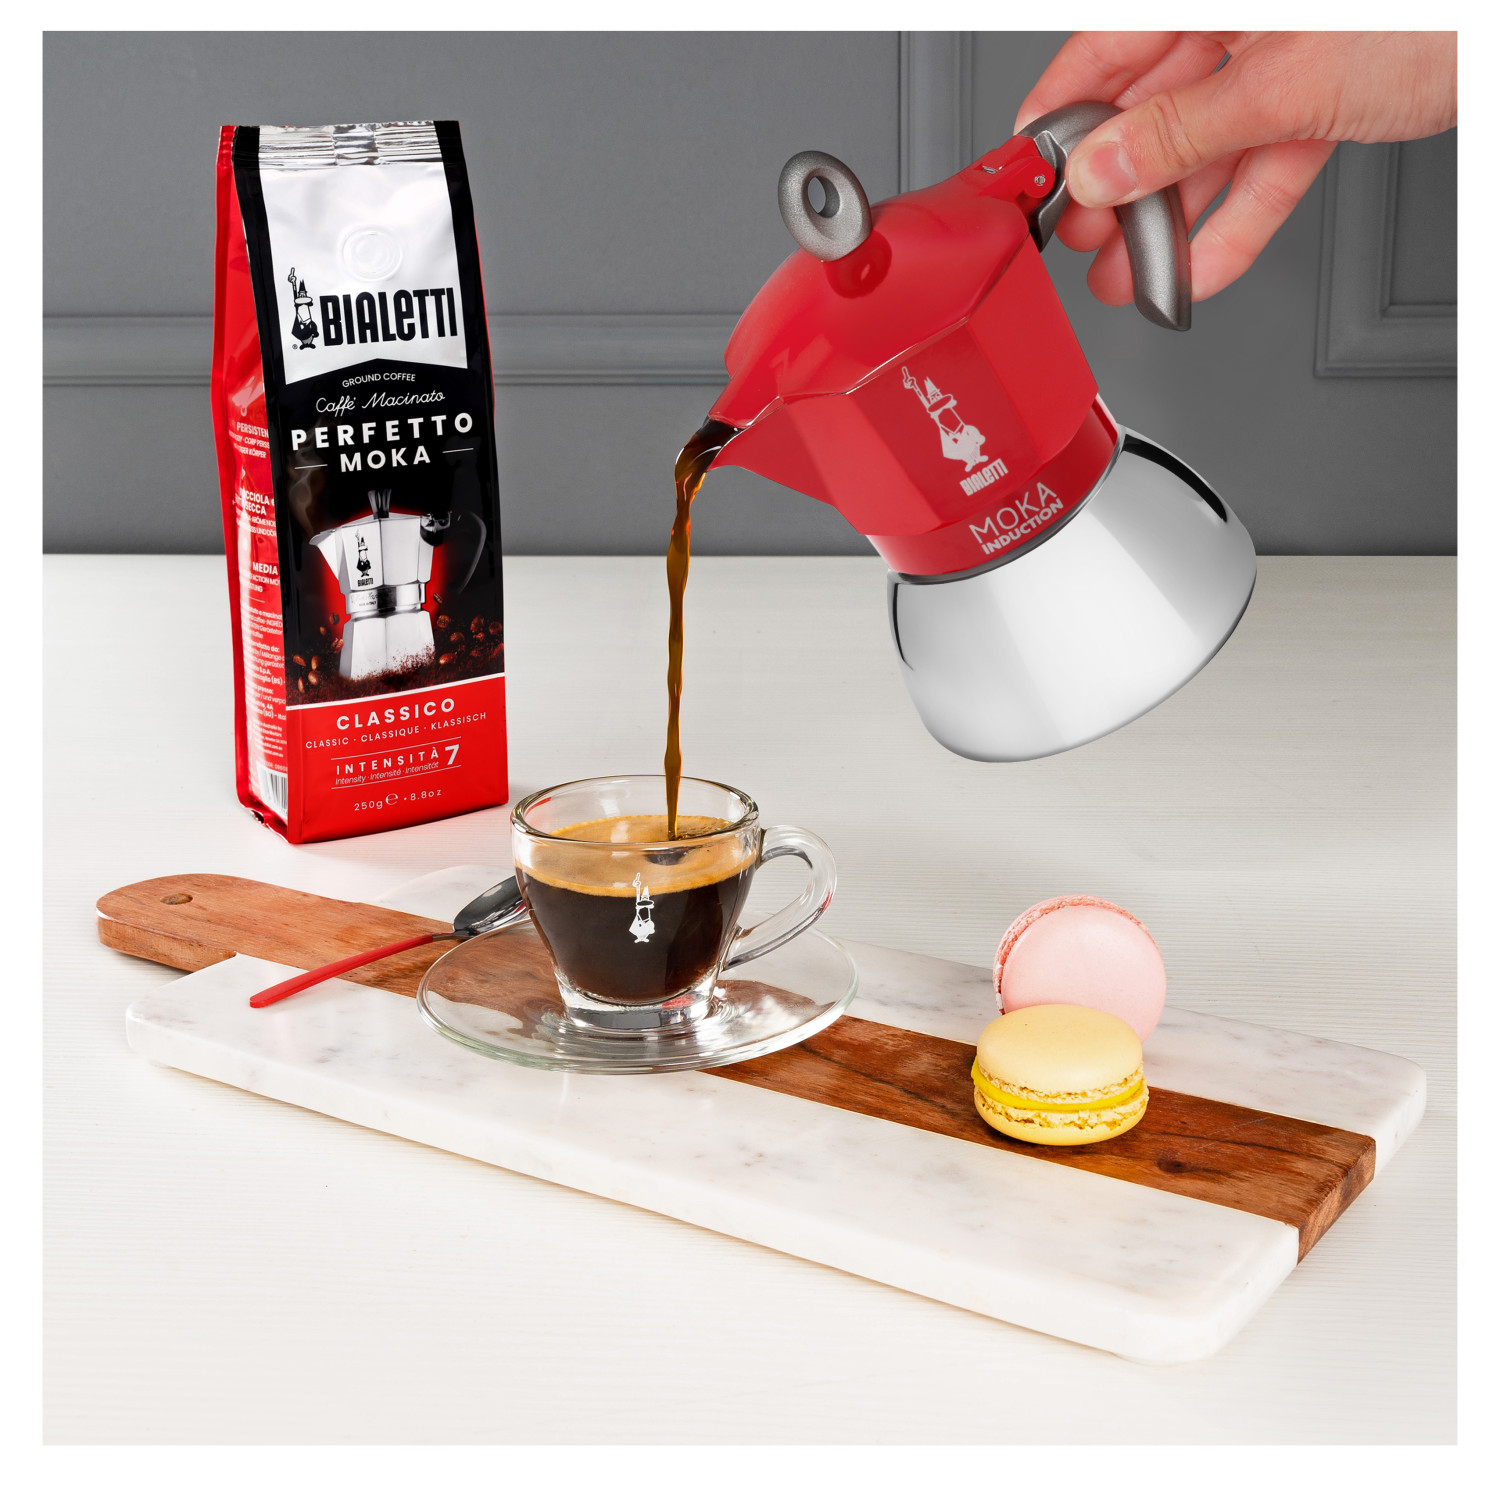 New Tassen für Moka RED Induction 4 Espressokocher BIALETTI Rot/Silber